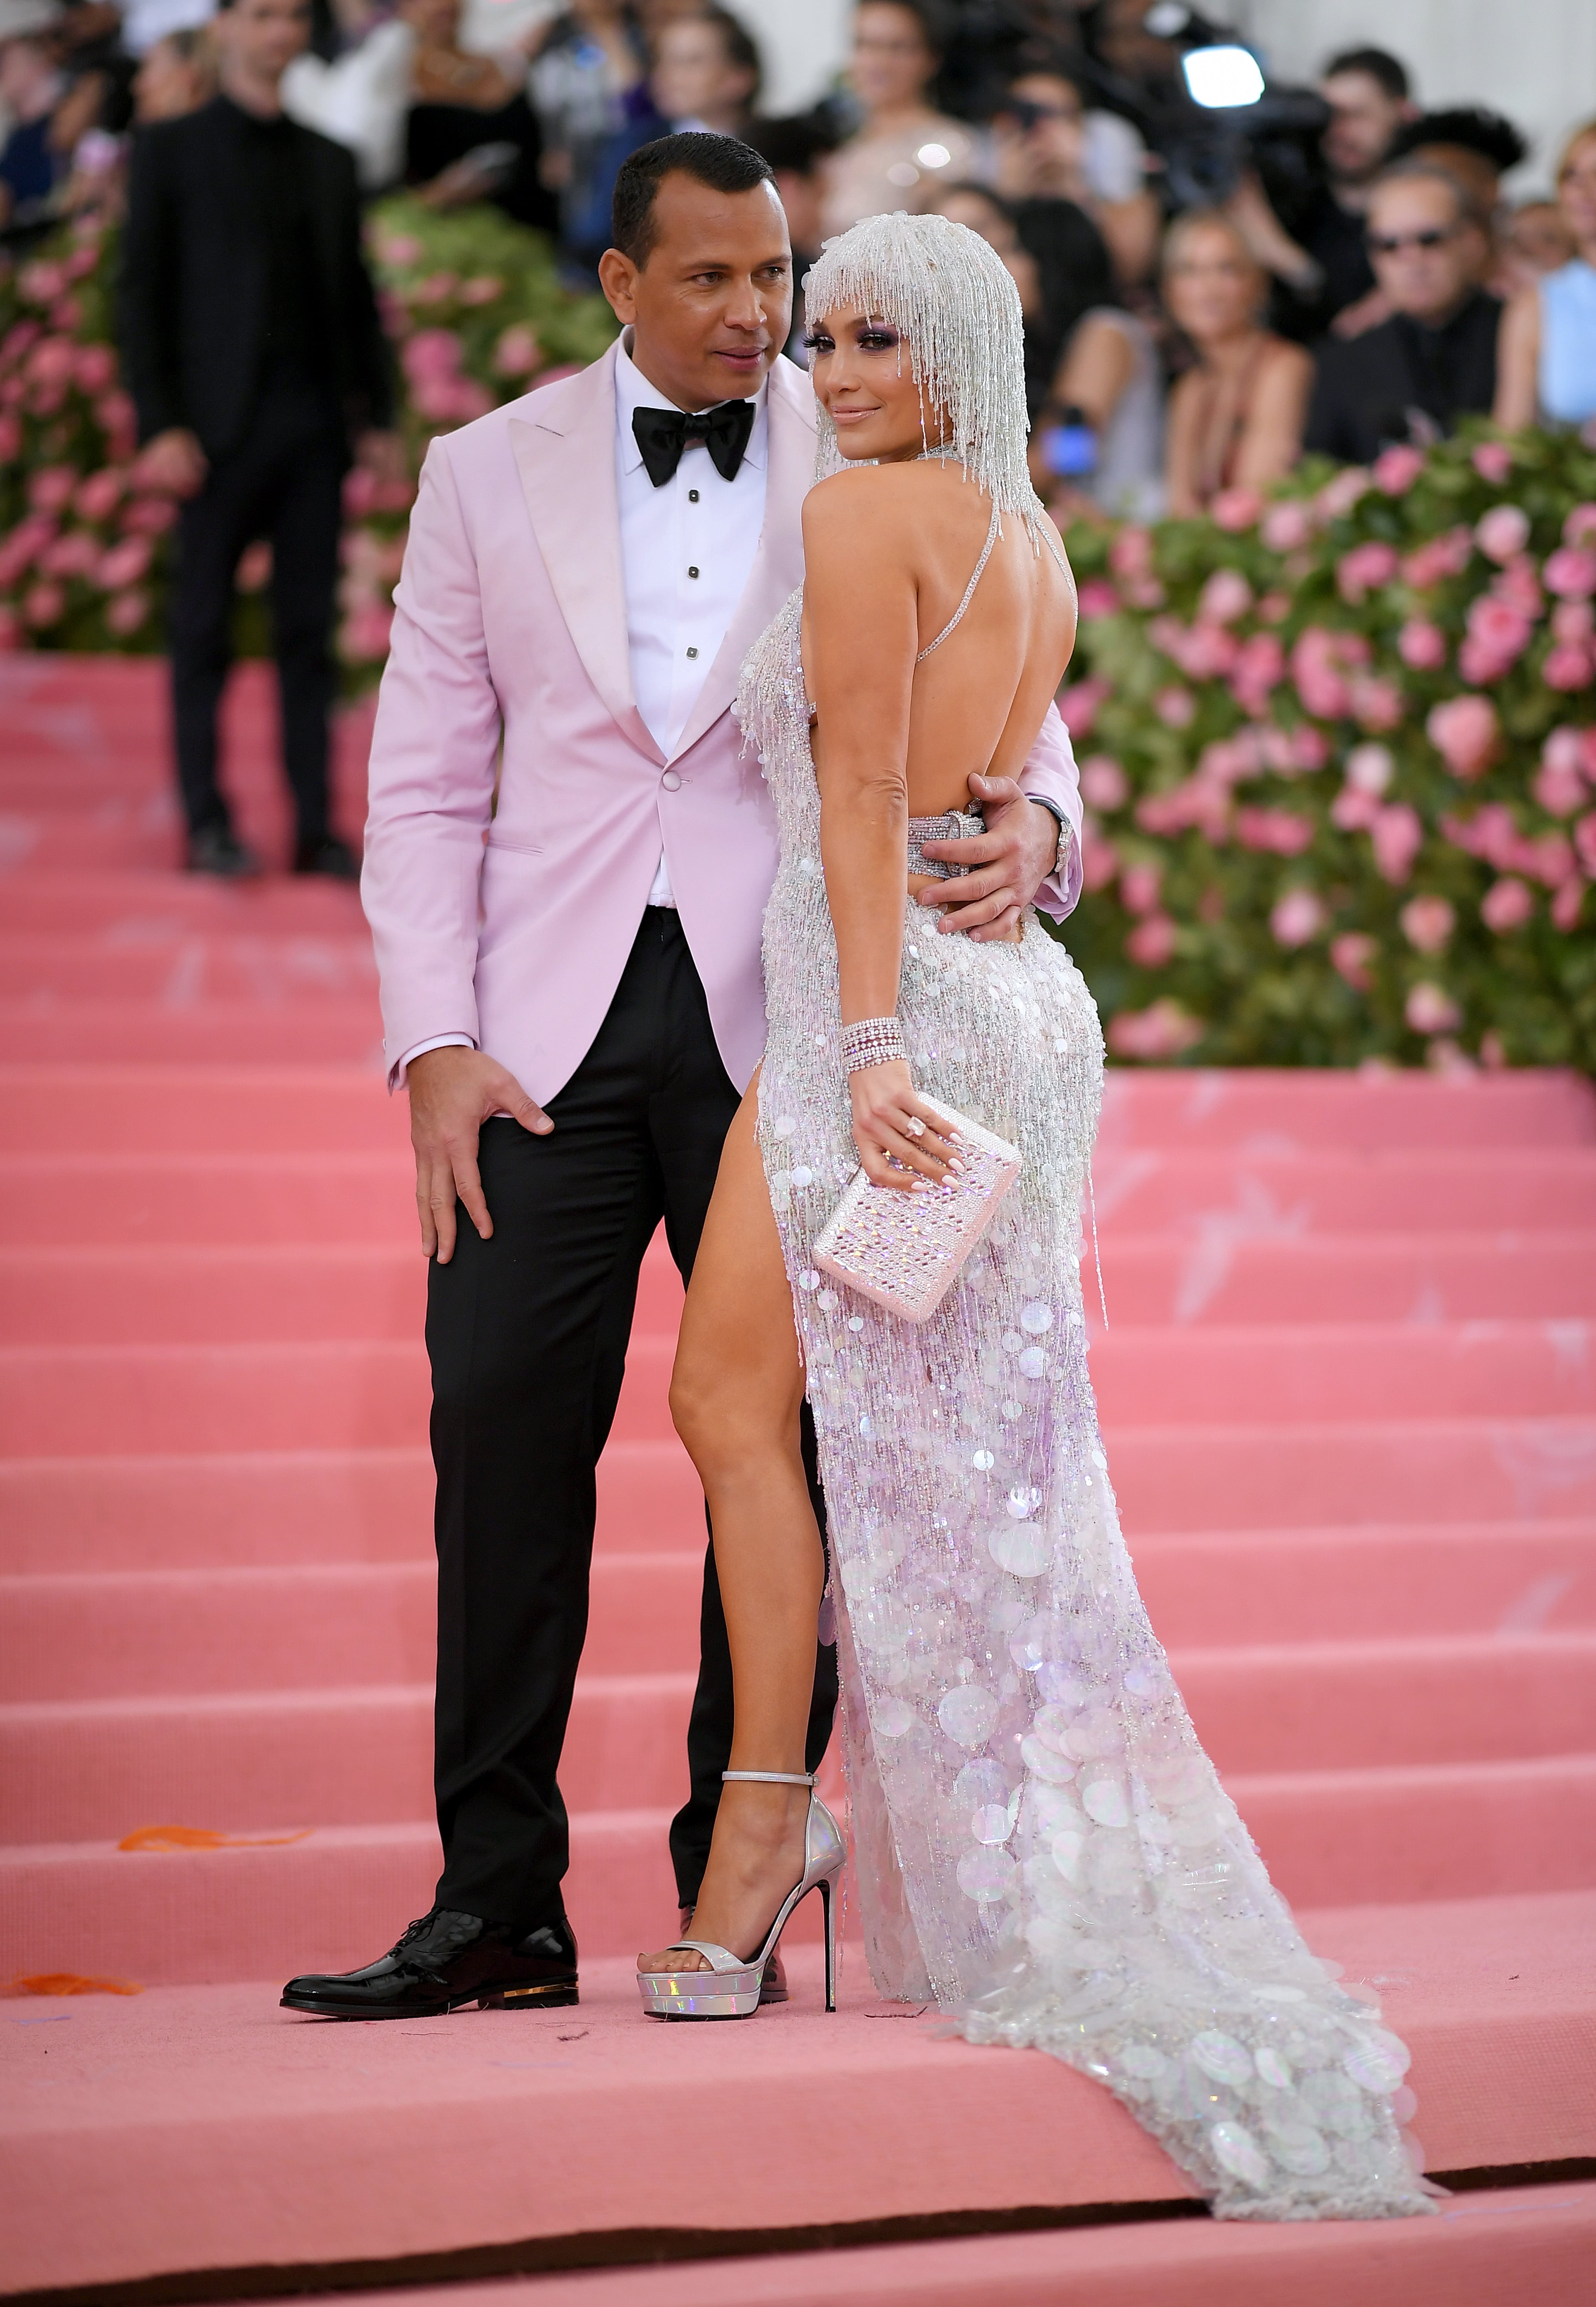 Jennifer Lopez Silver Dress Met Gala 2019